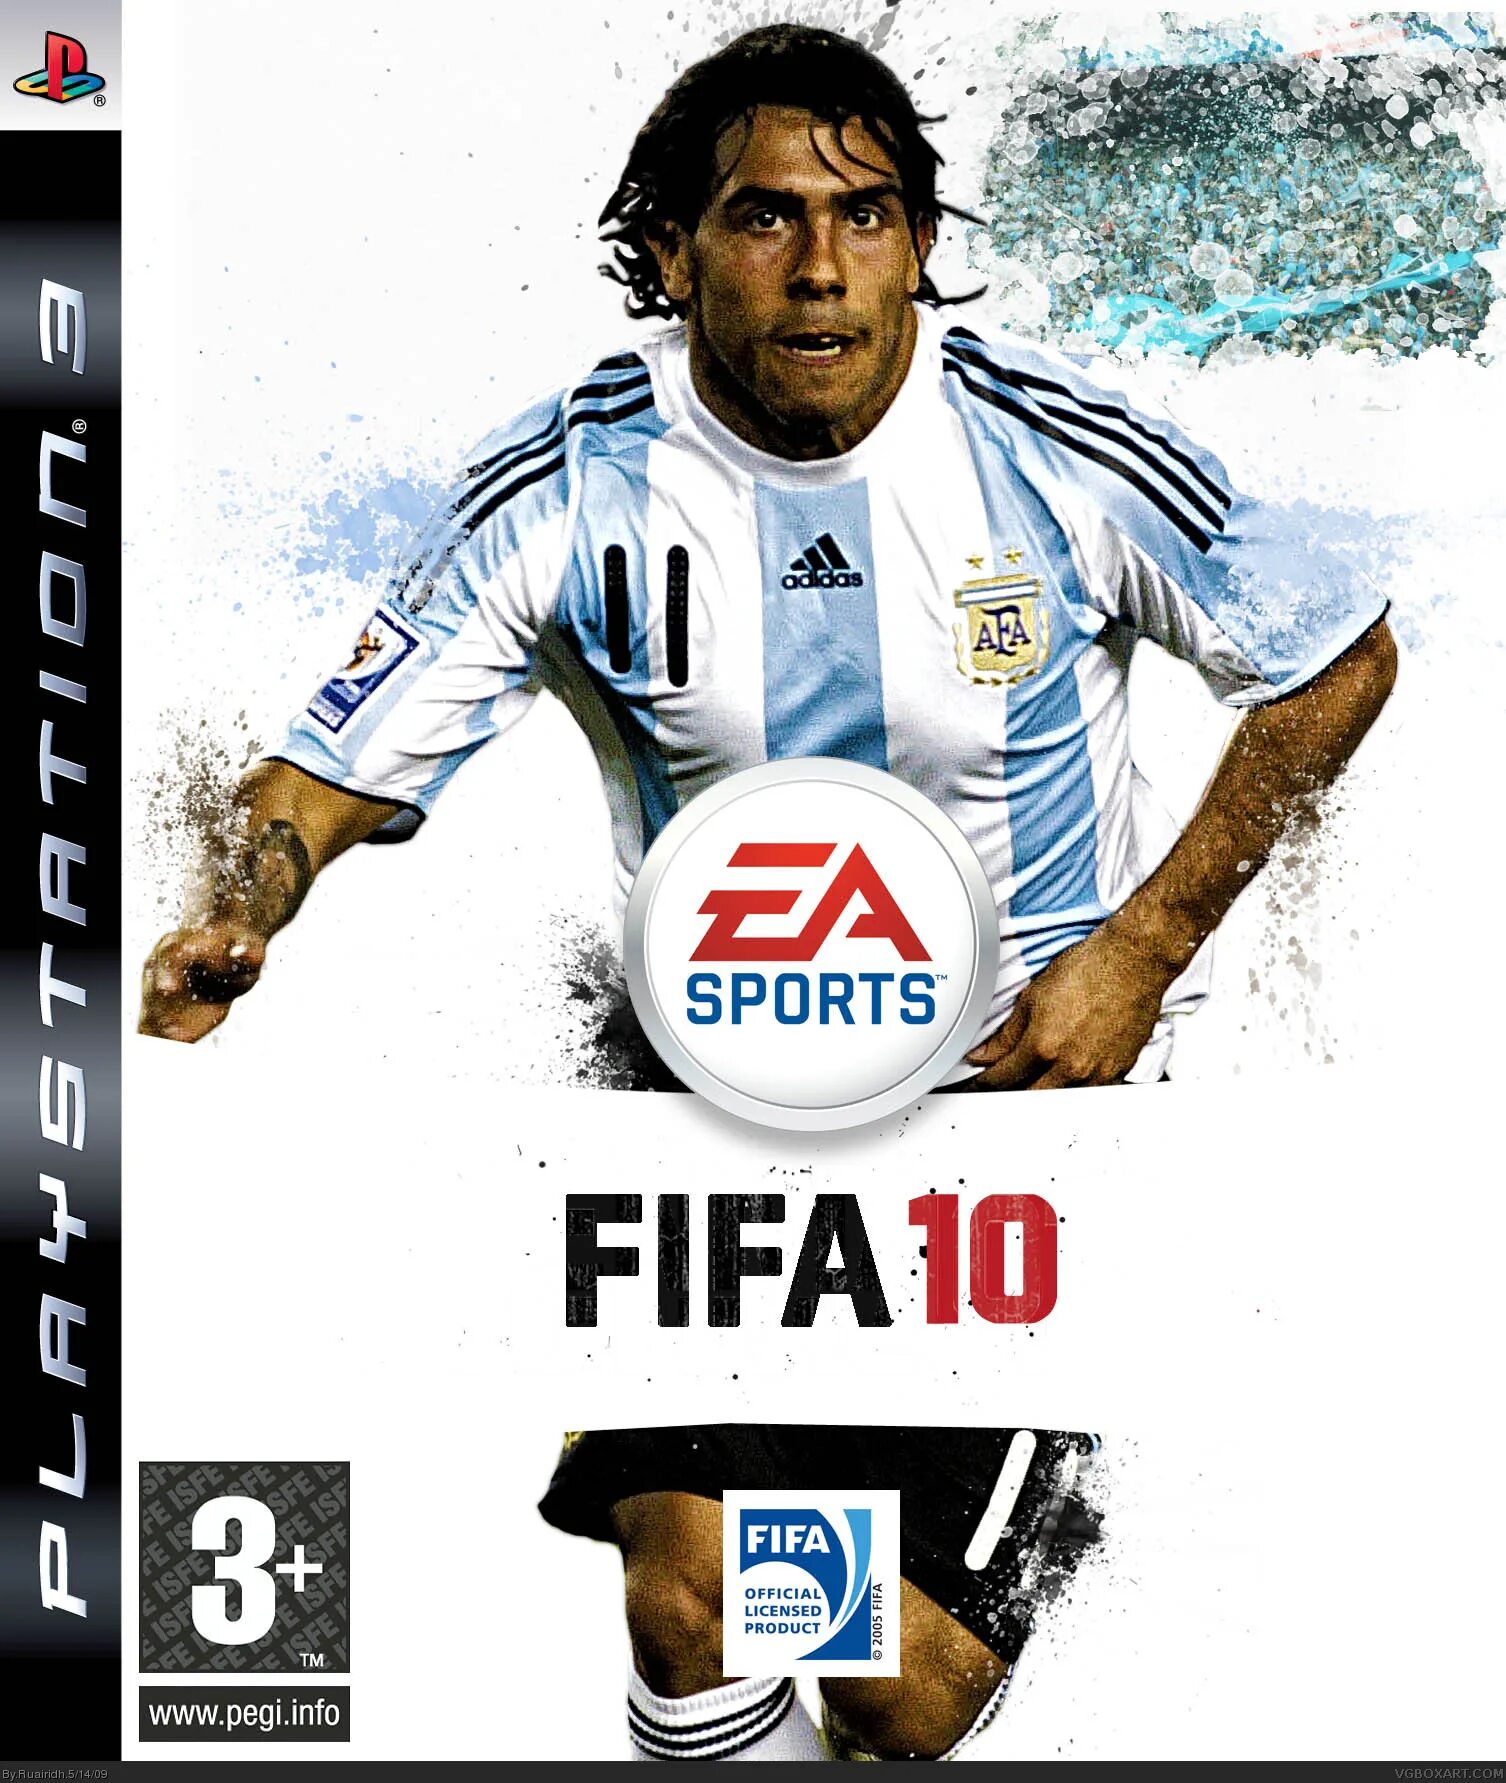 Fifa песня. FIFA 10 ps3. FIFA 10 обложка PC. FIFA 2009 обложка. FIFA 09 обложка.